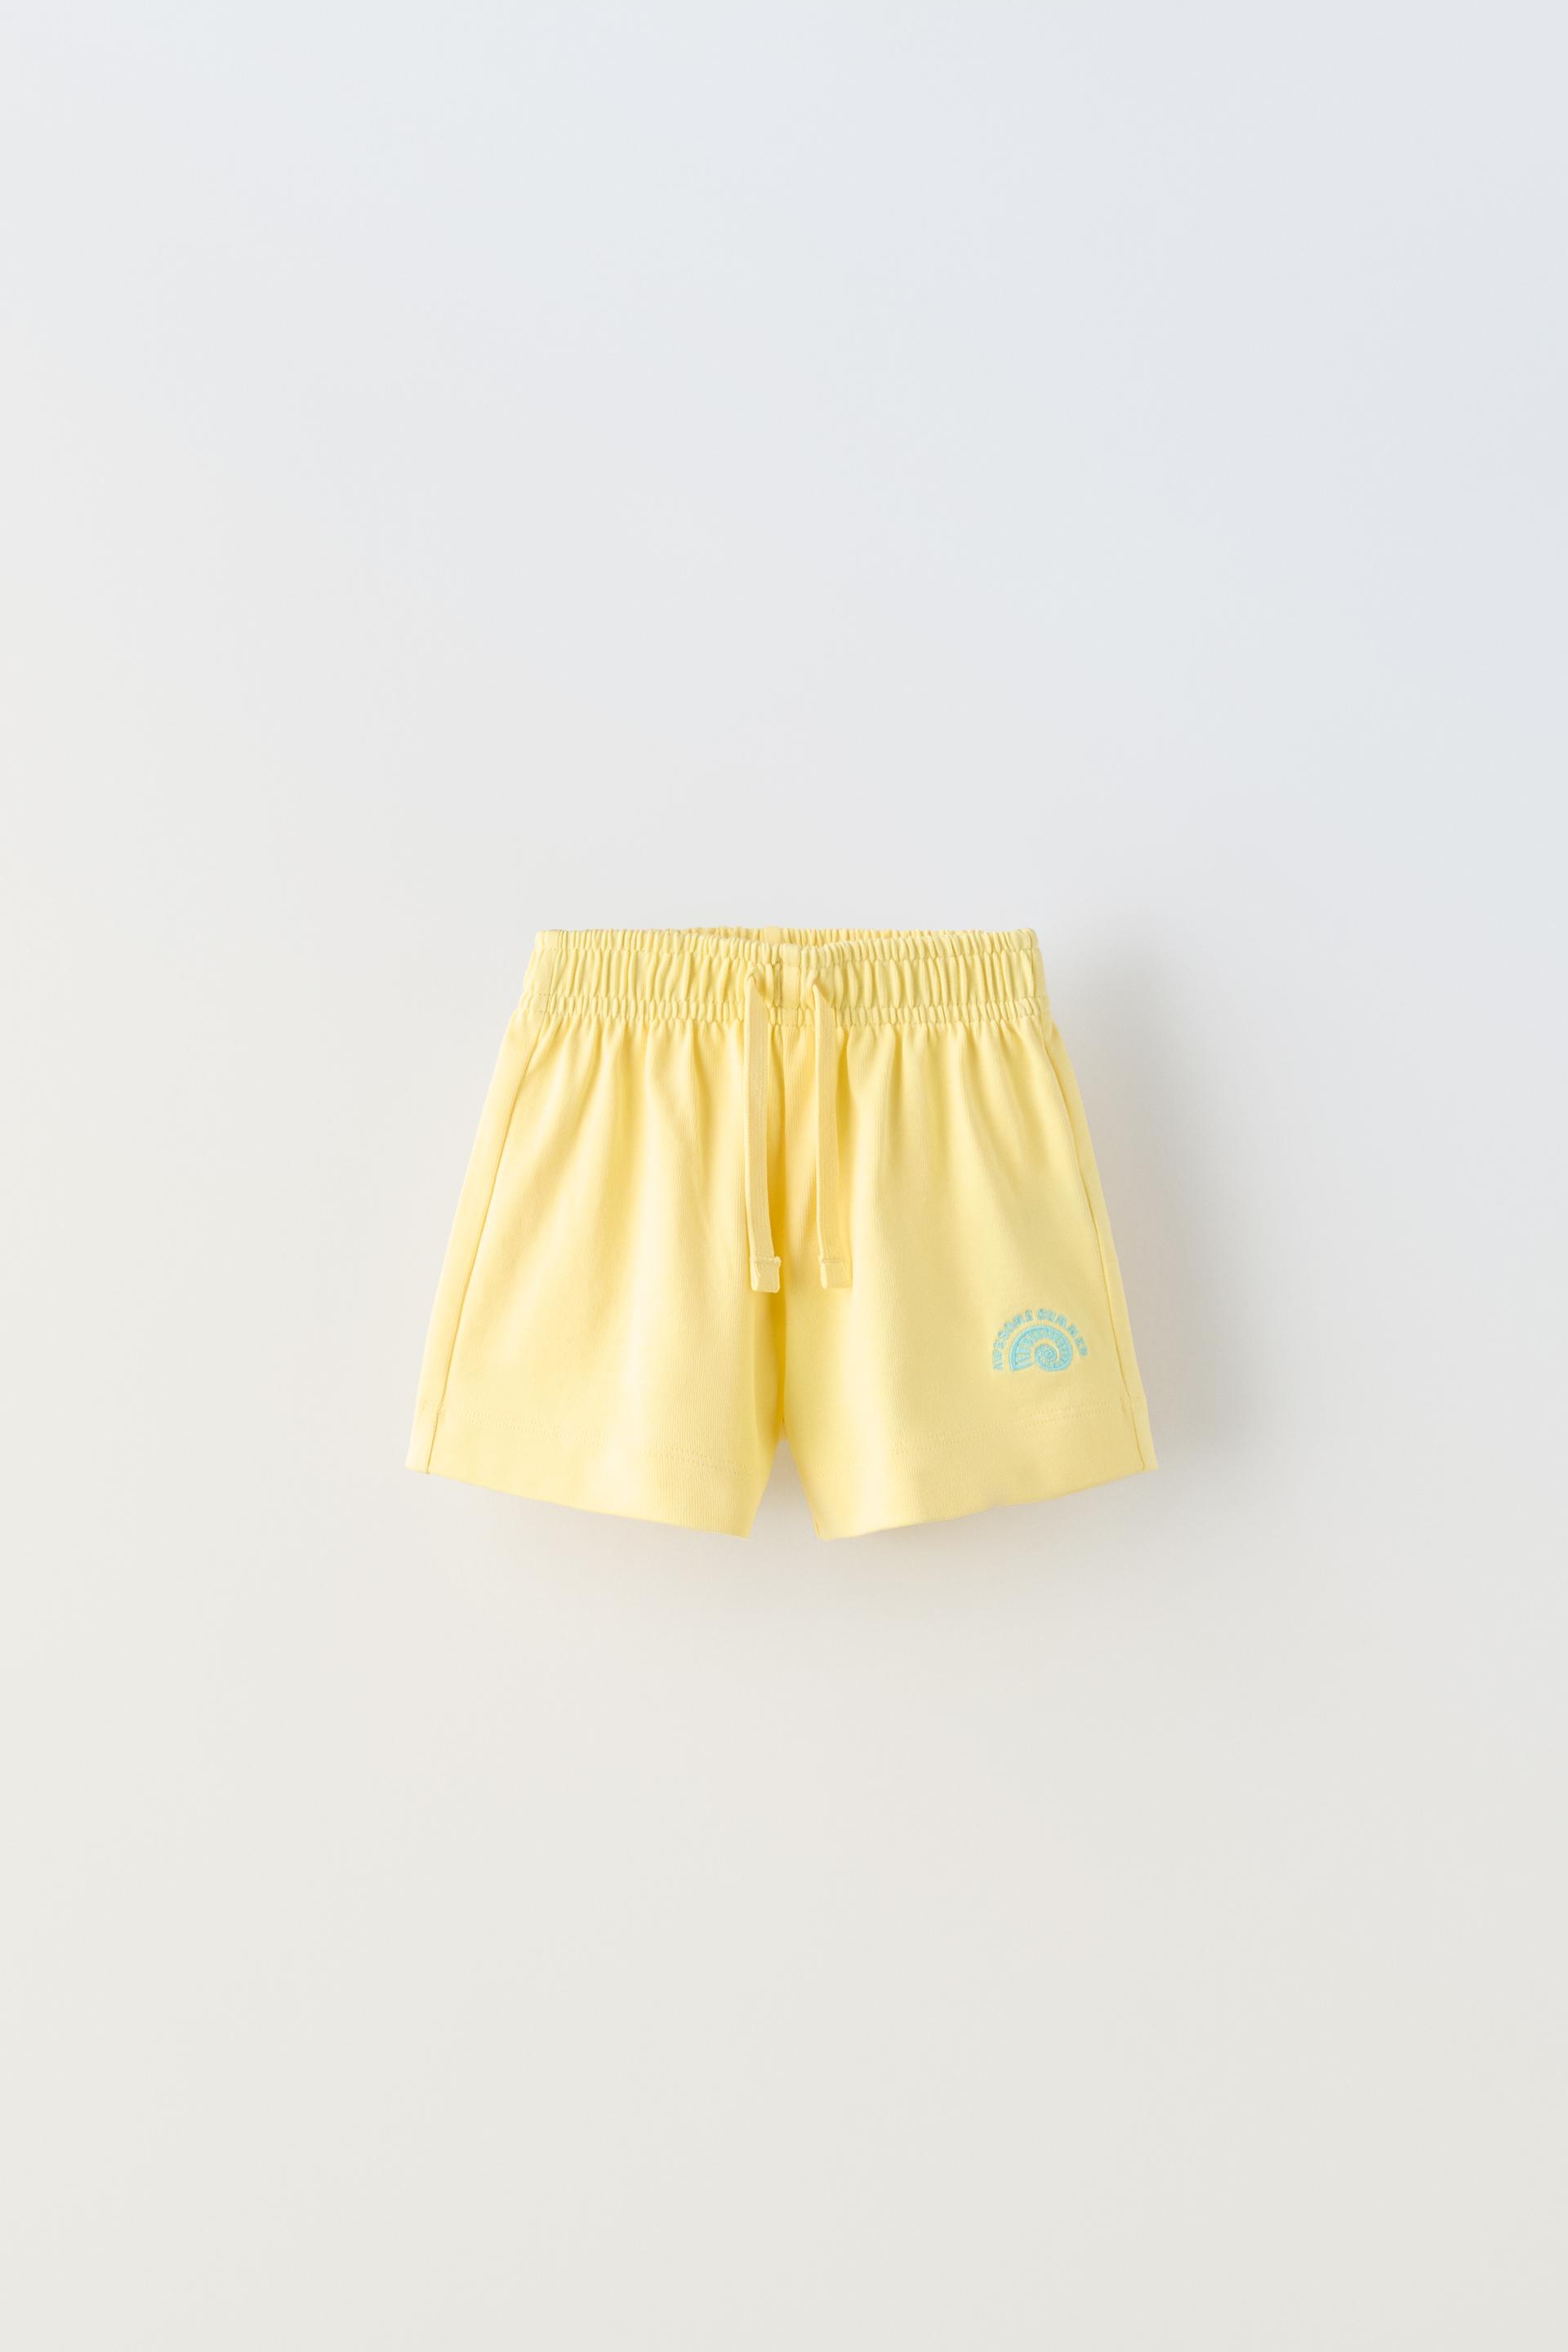 Шорты Zara Plush Bermuda, желтый шорты с аппликациями на 9 12 месяцев